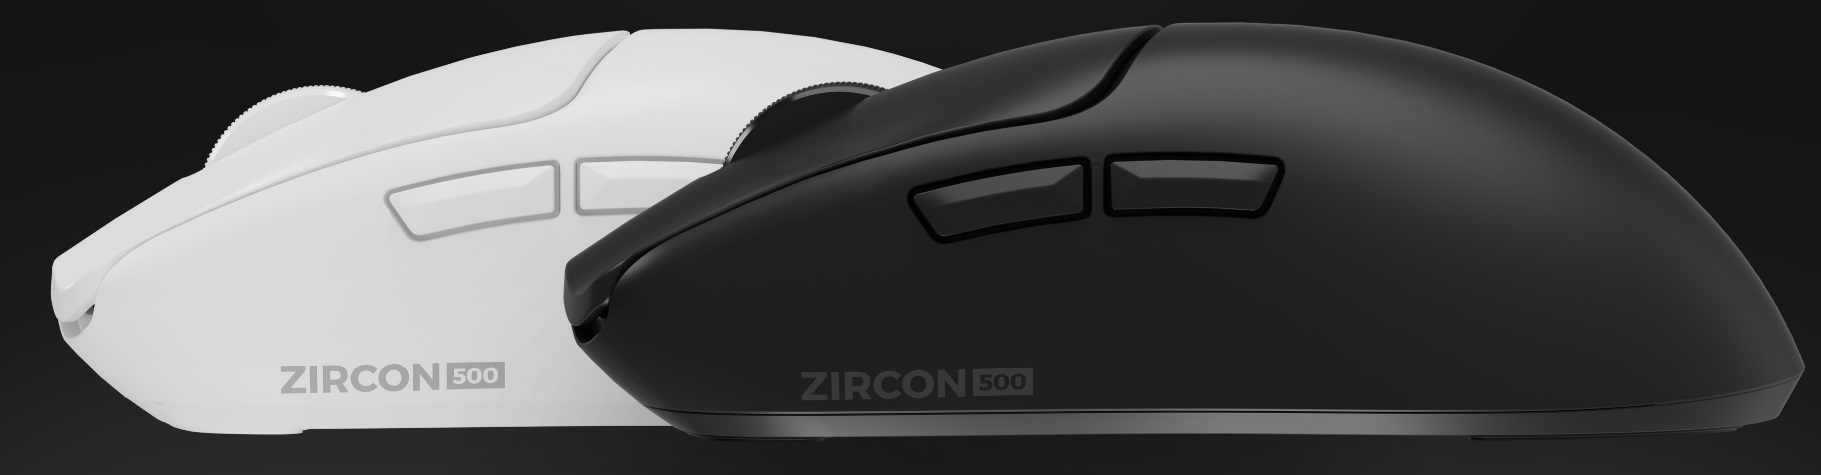 Genesis - Zircon 500